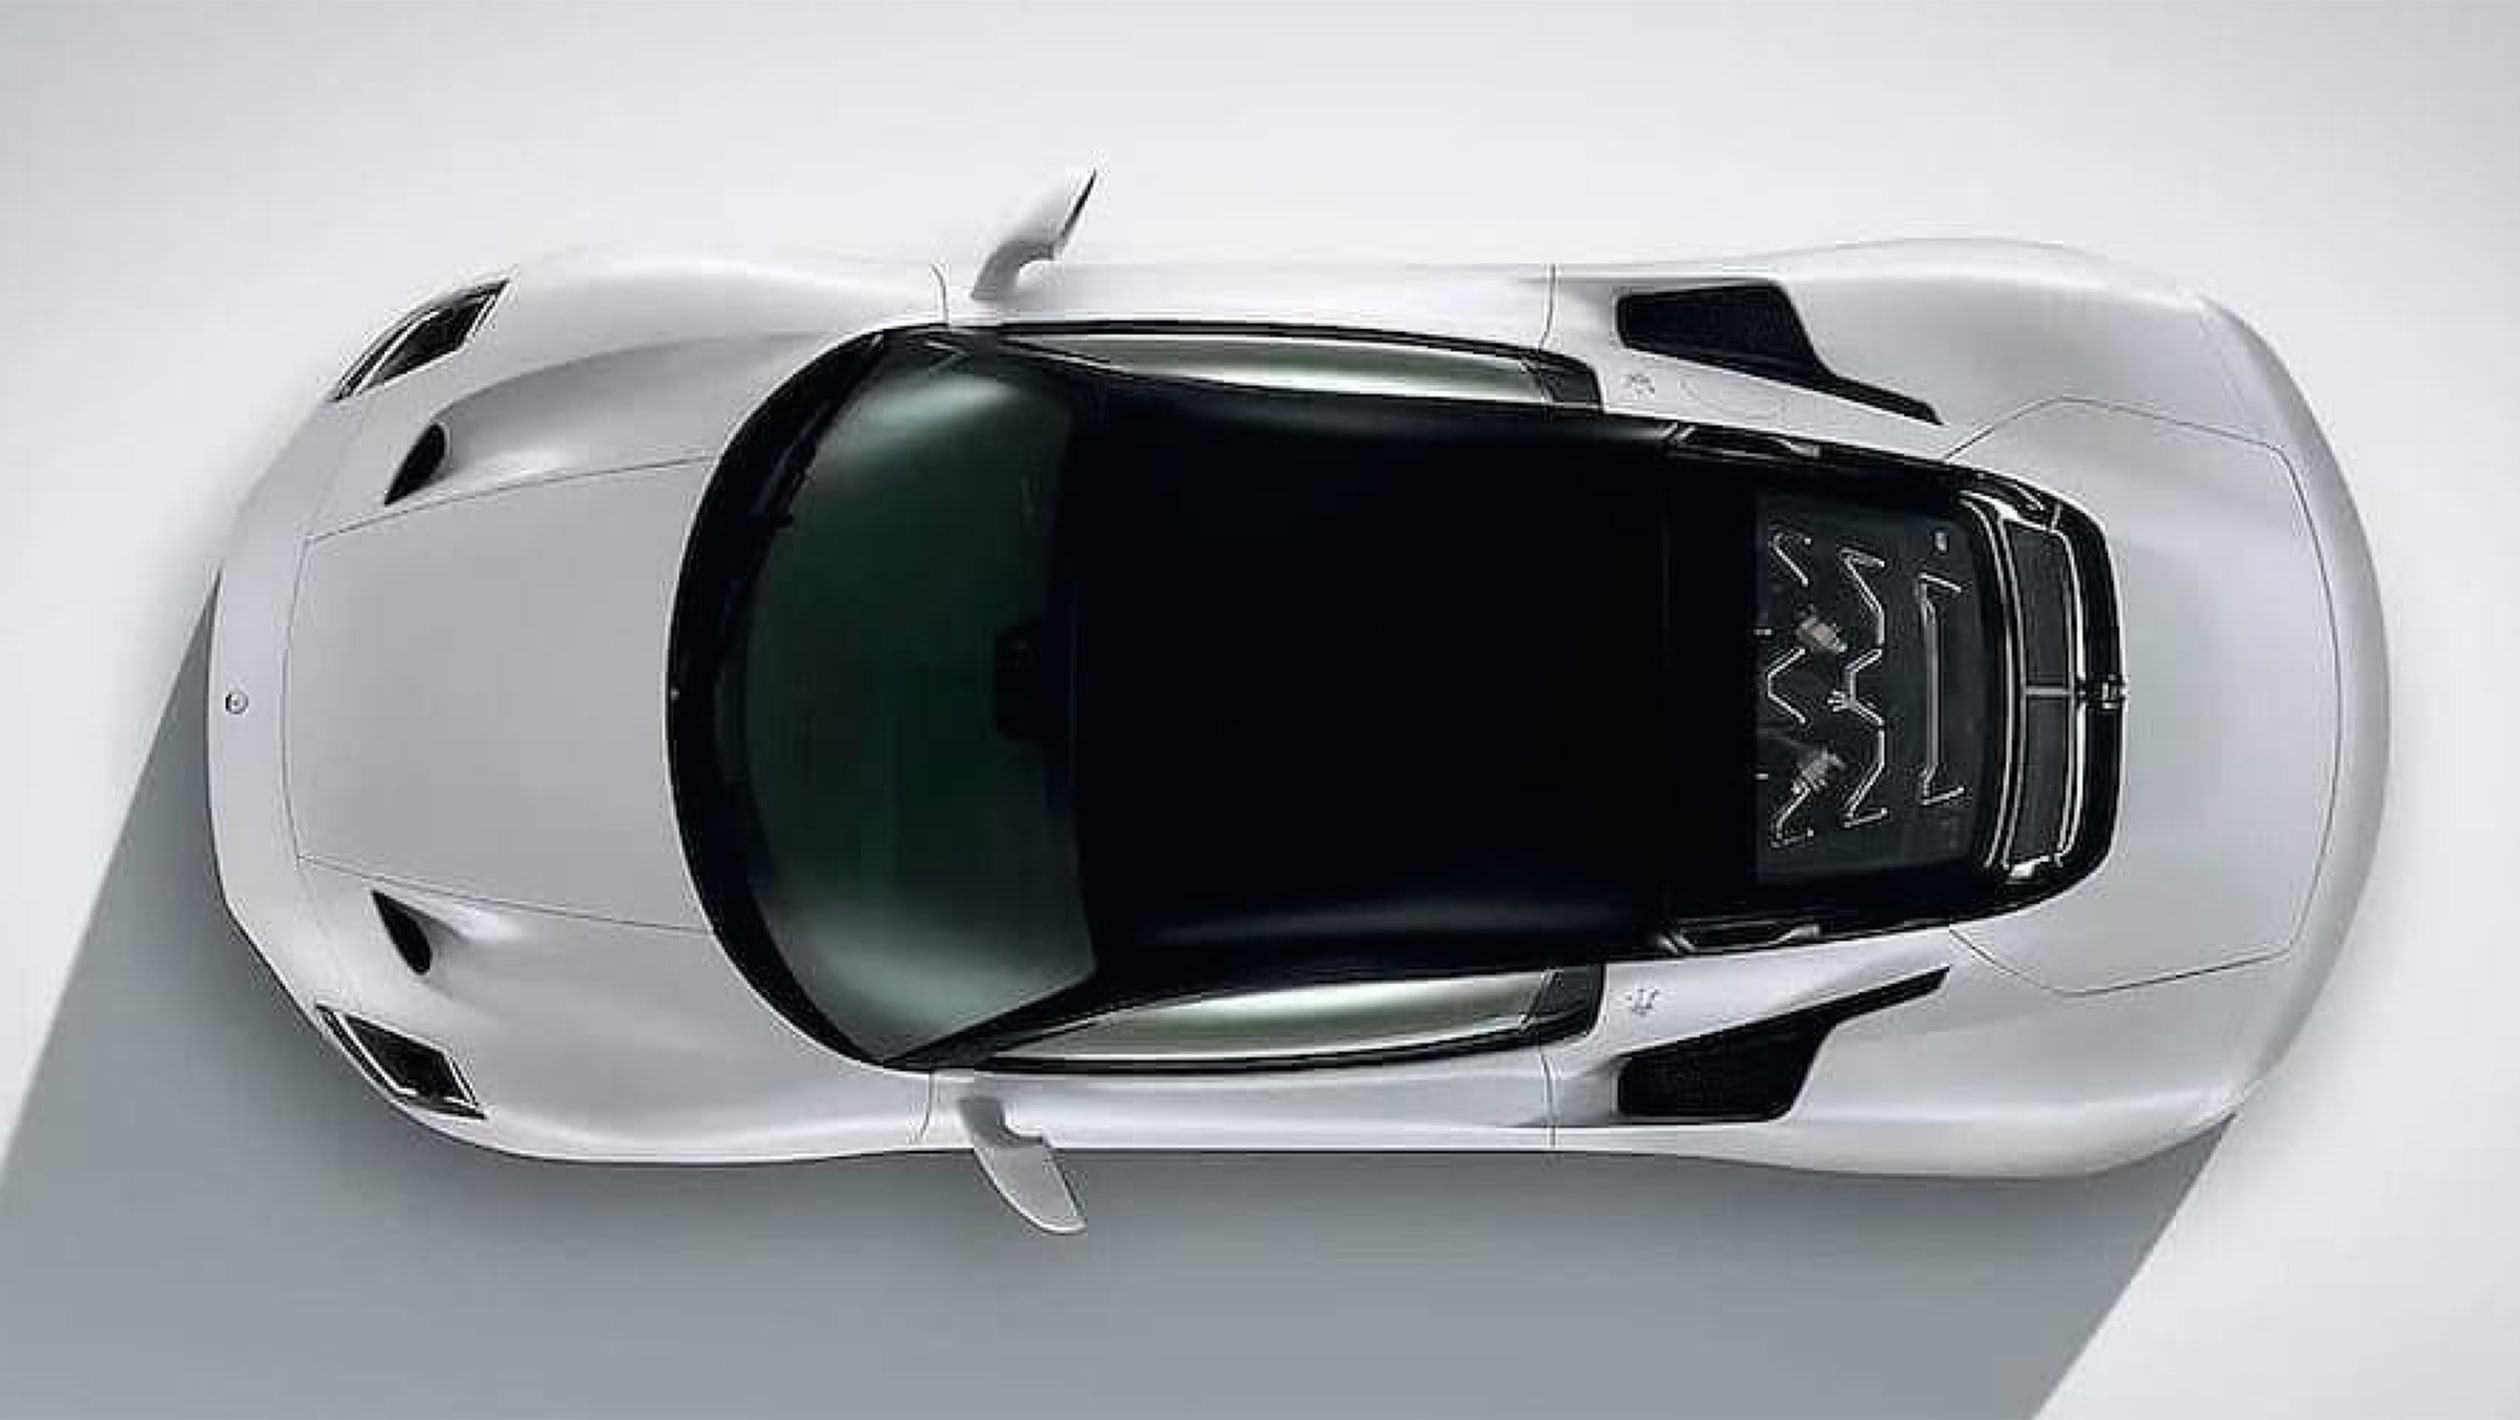 aria-label="Maserati MC20 leaked images 8"